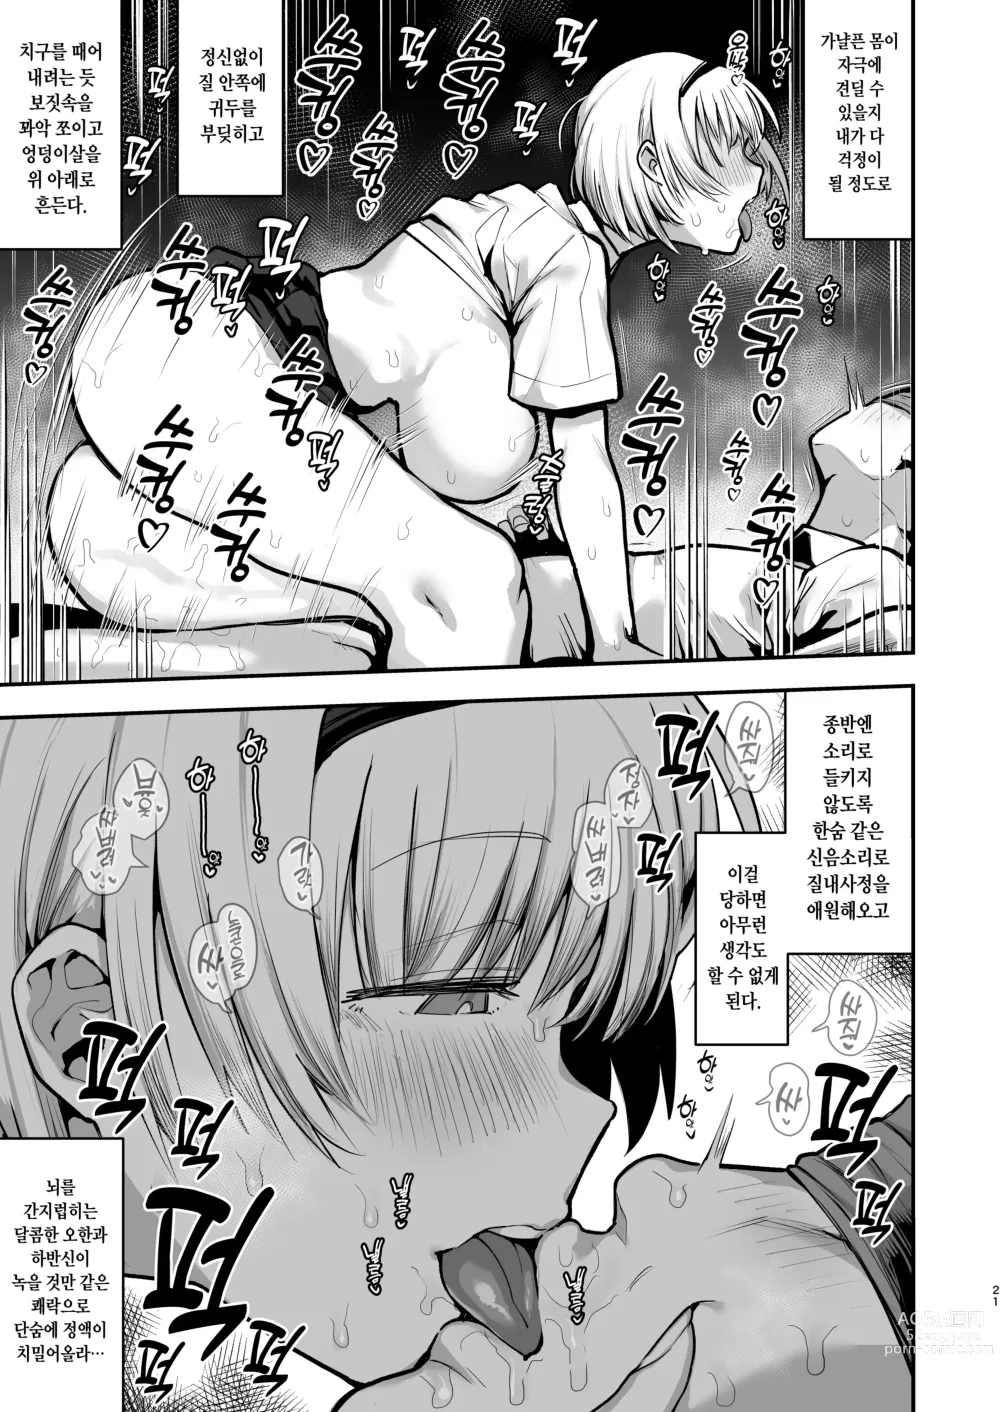 Page 23 of doujinshi 여학교의 성욕처리담당 의 으로 편입한 남학생이 작성한 기록